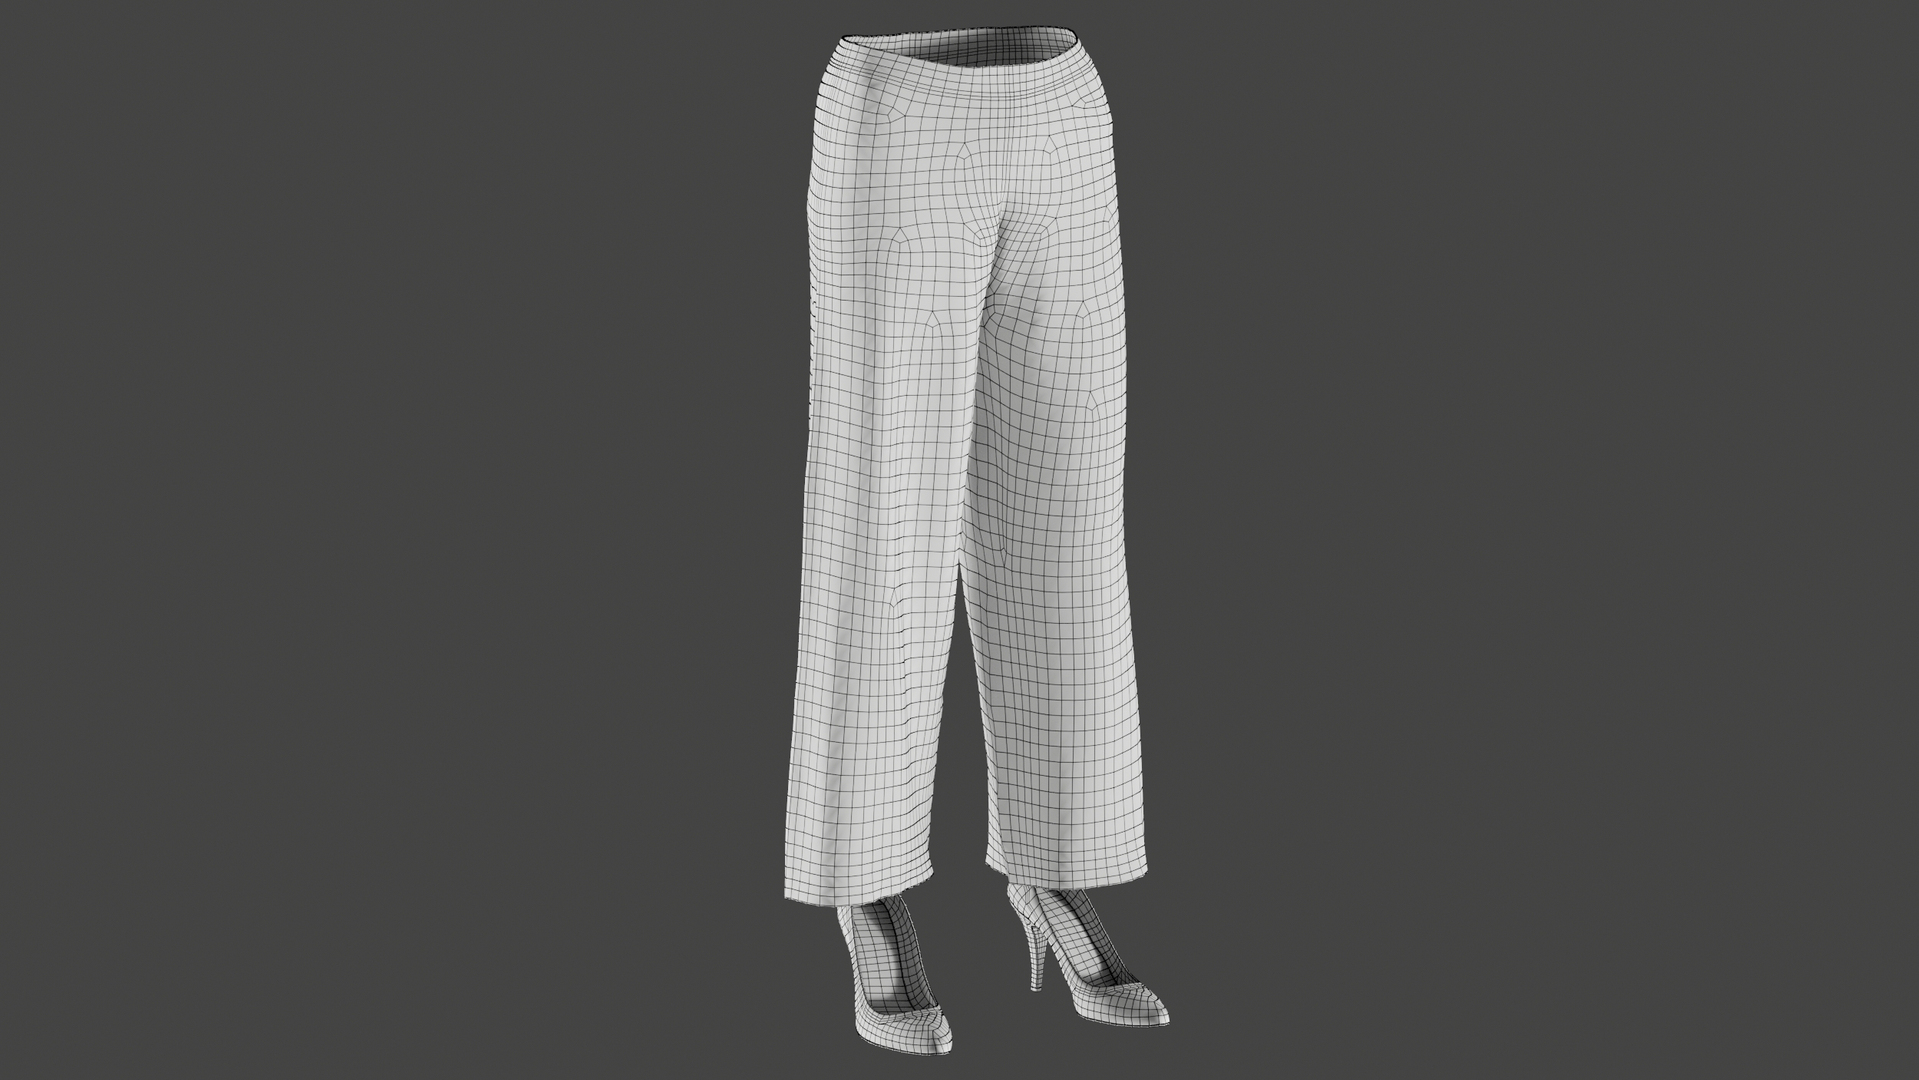 Mesh women s pants model - TurboSquid 1615615